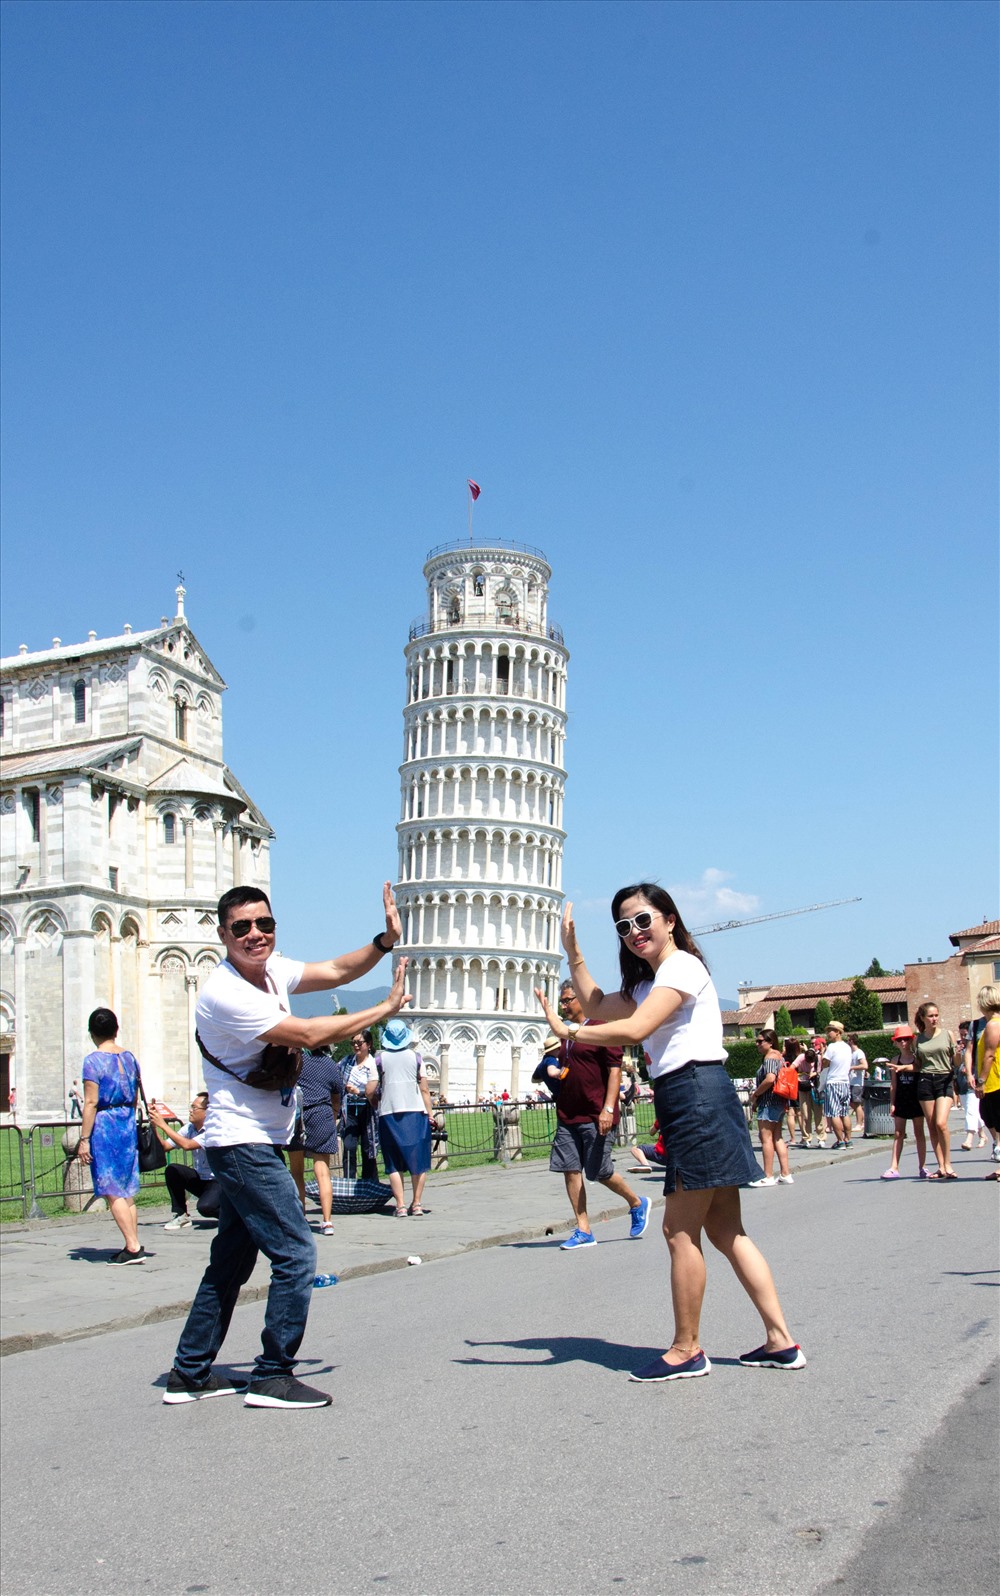 Tháp nghiêng Pisa: Độc đáo nhờ sự tình cờ… sụt lún